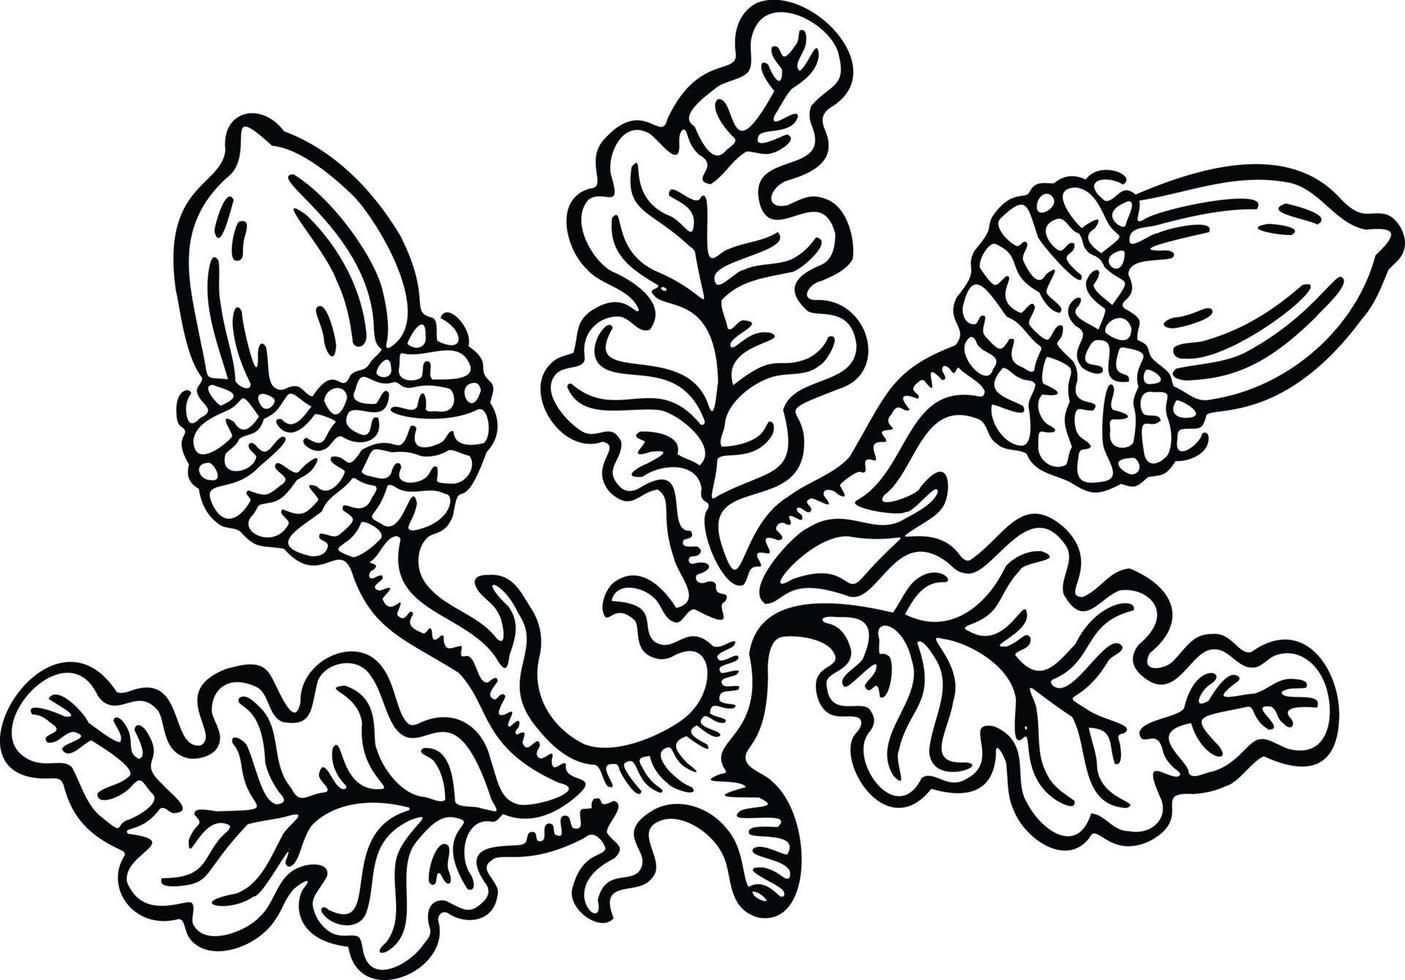 signo lineal en blanco y negro, designación de roble con bellotas, vector de ilustración dibujado a mano